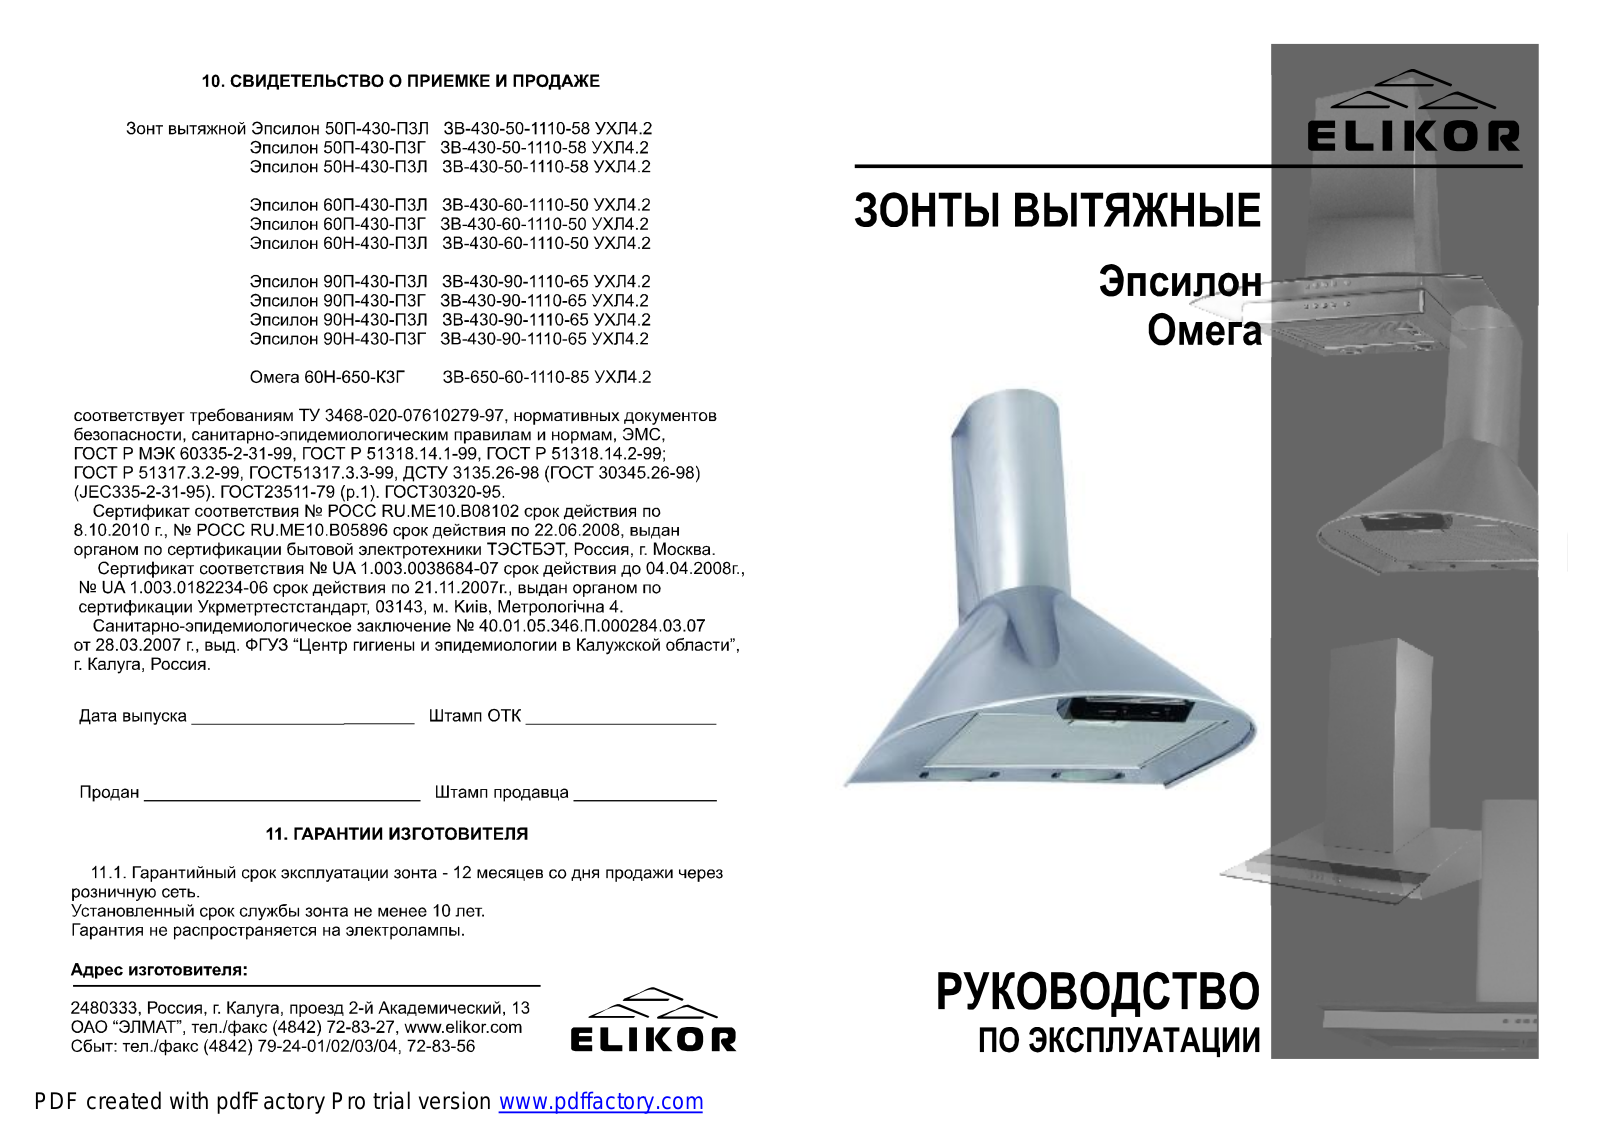 Elikor Epsilon 600 W User Manual